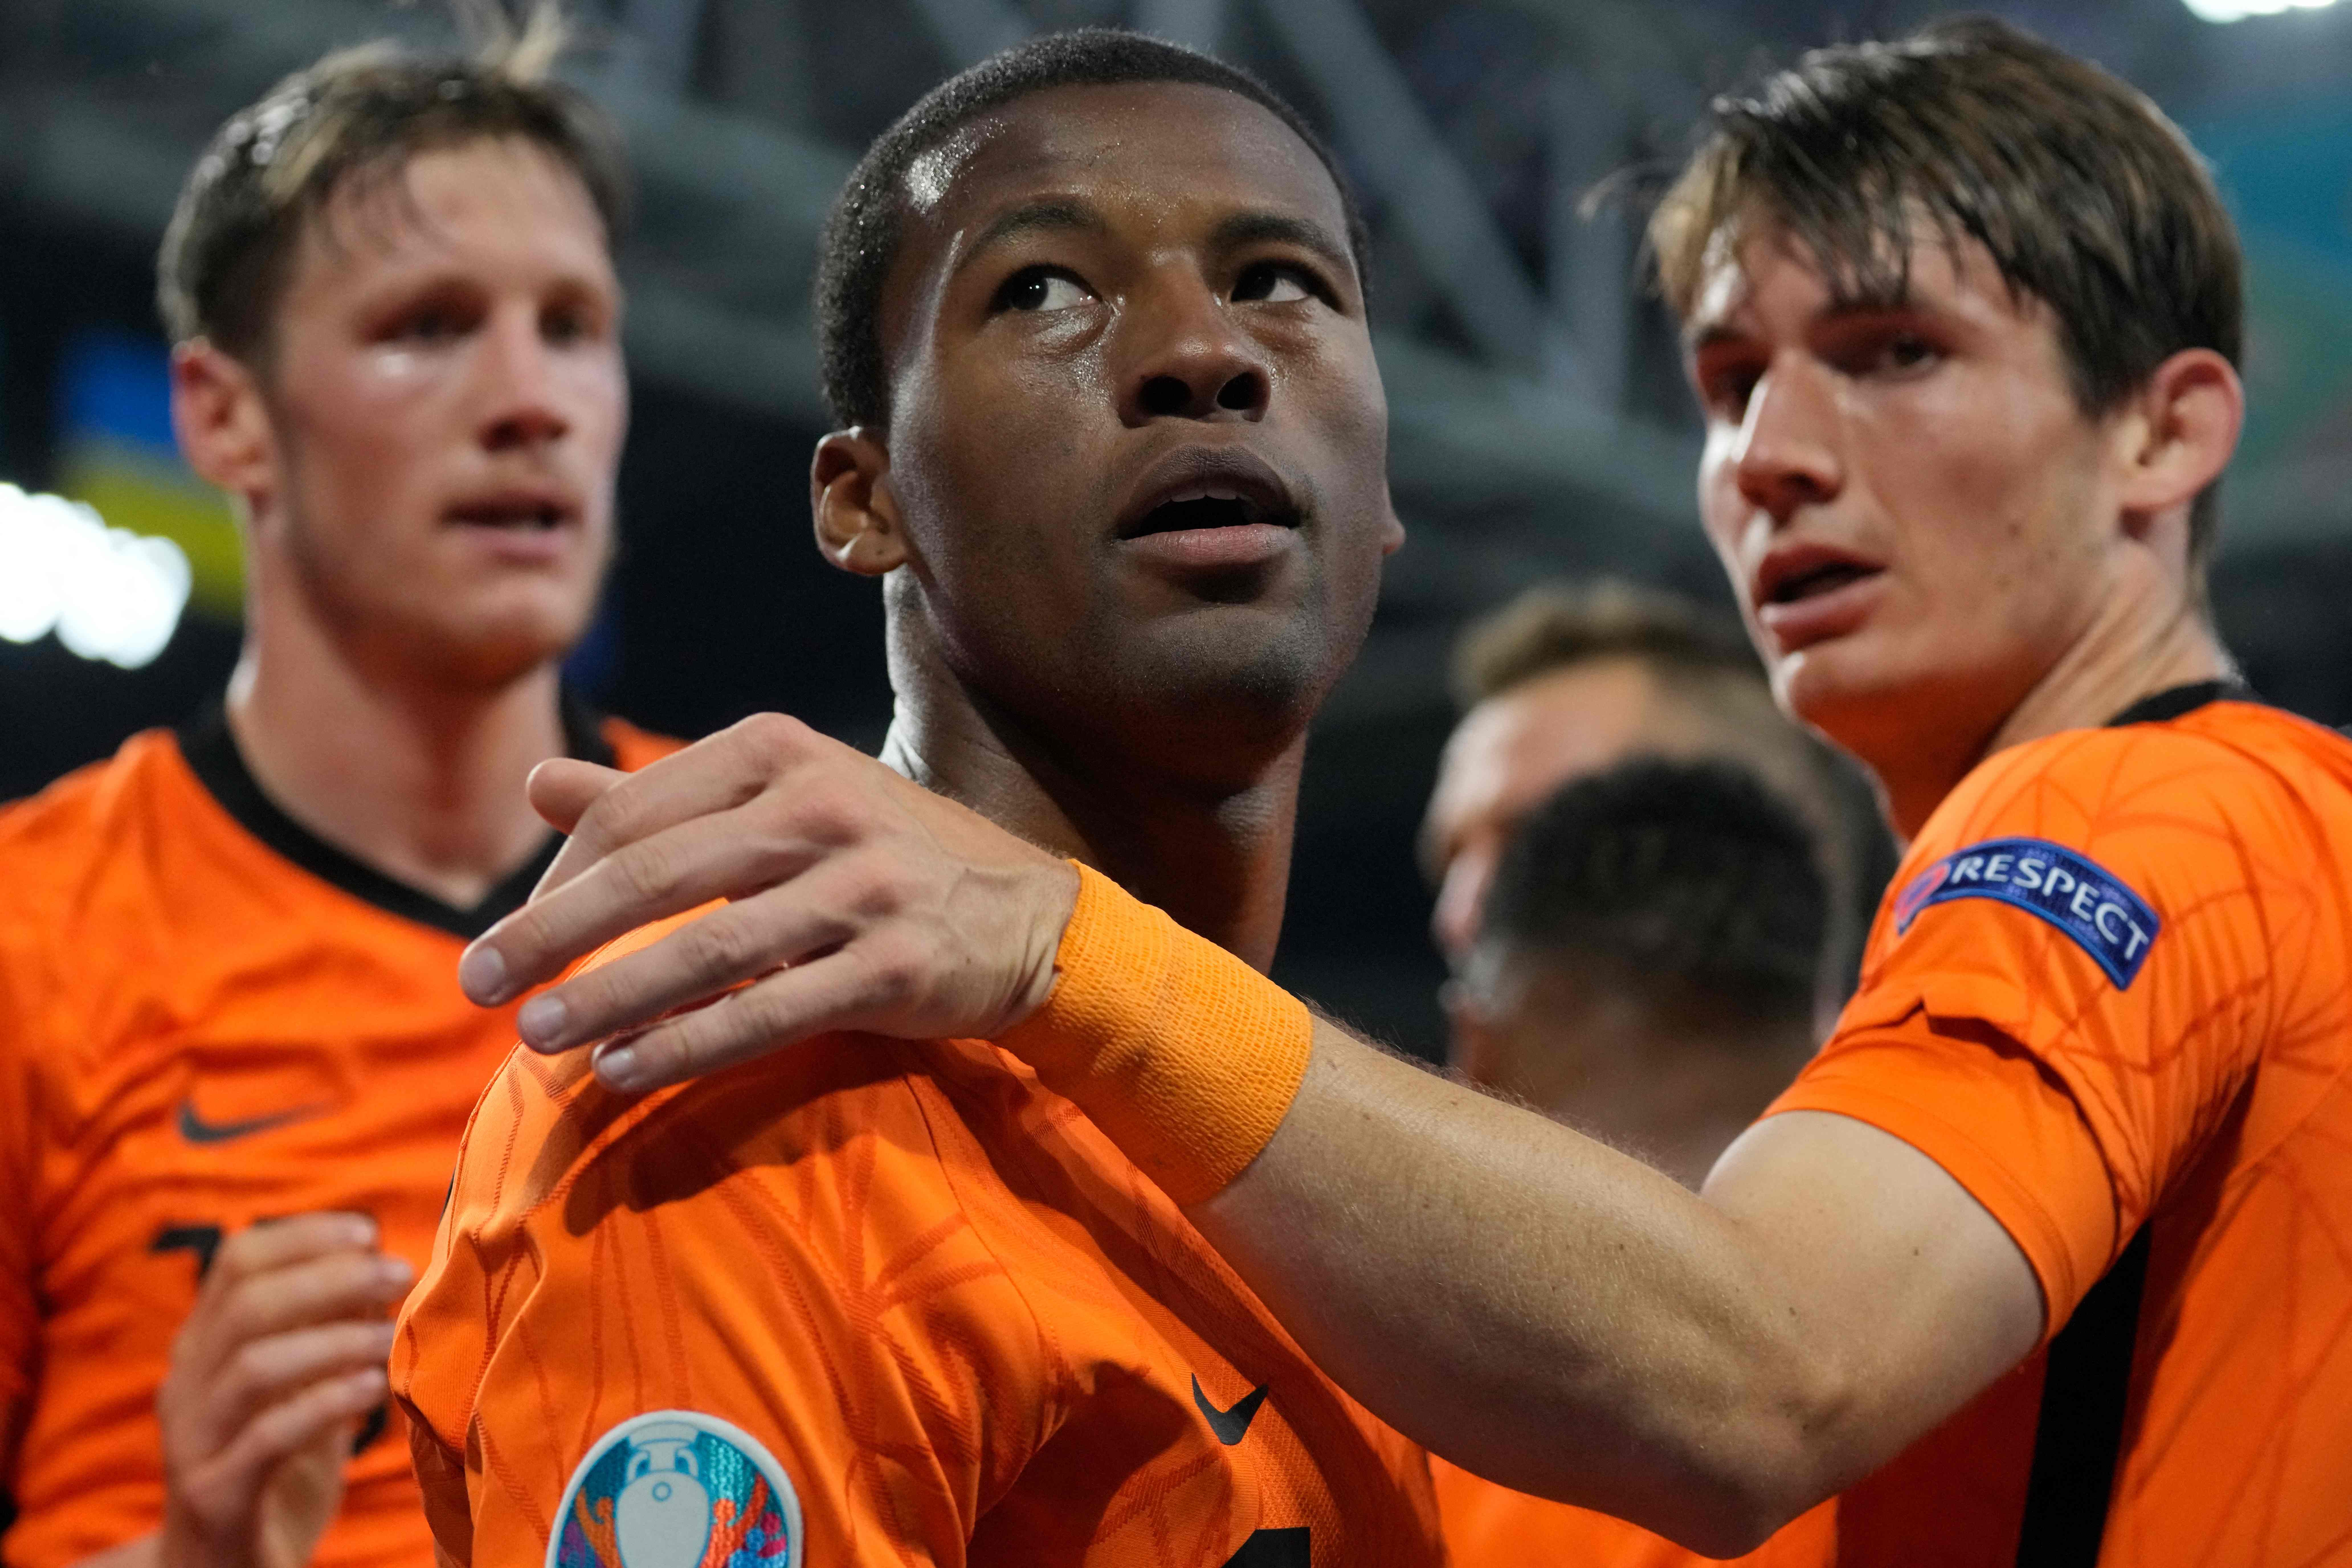 时隔2528天,荷兰国家队再次在大赛中进球